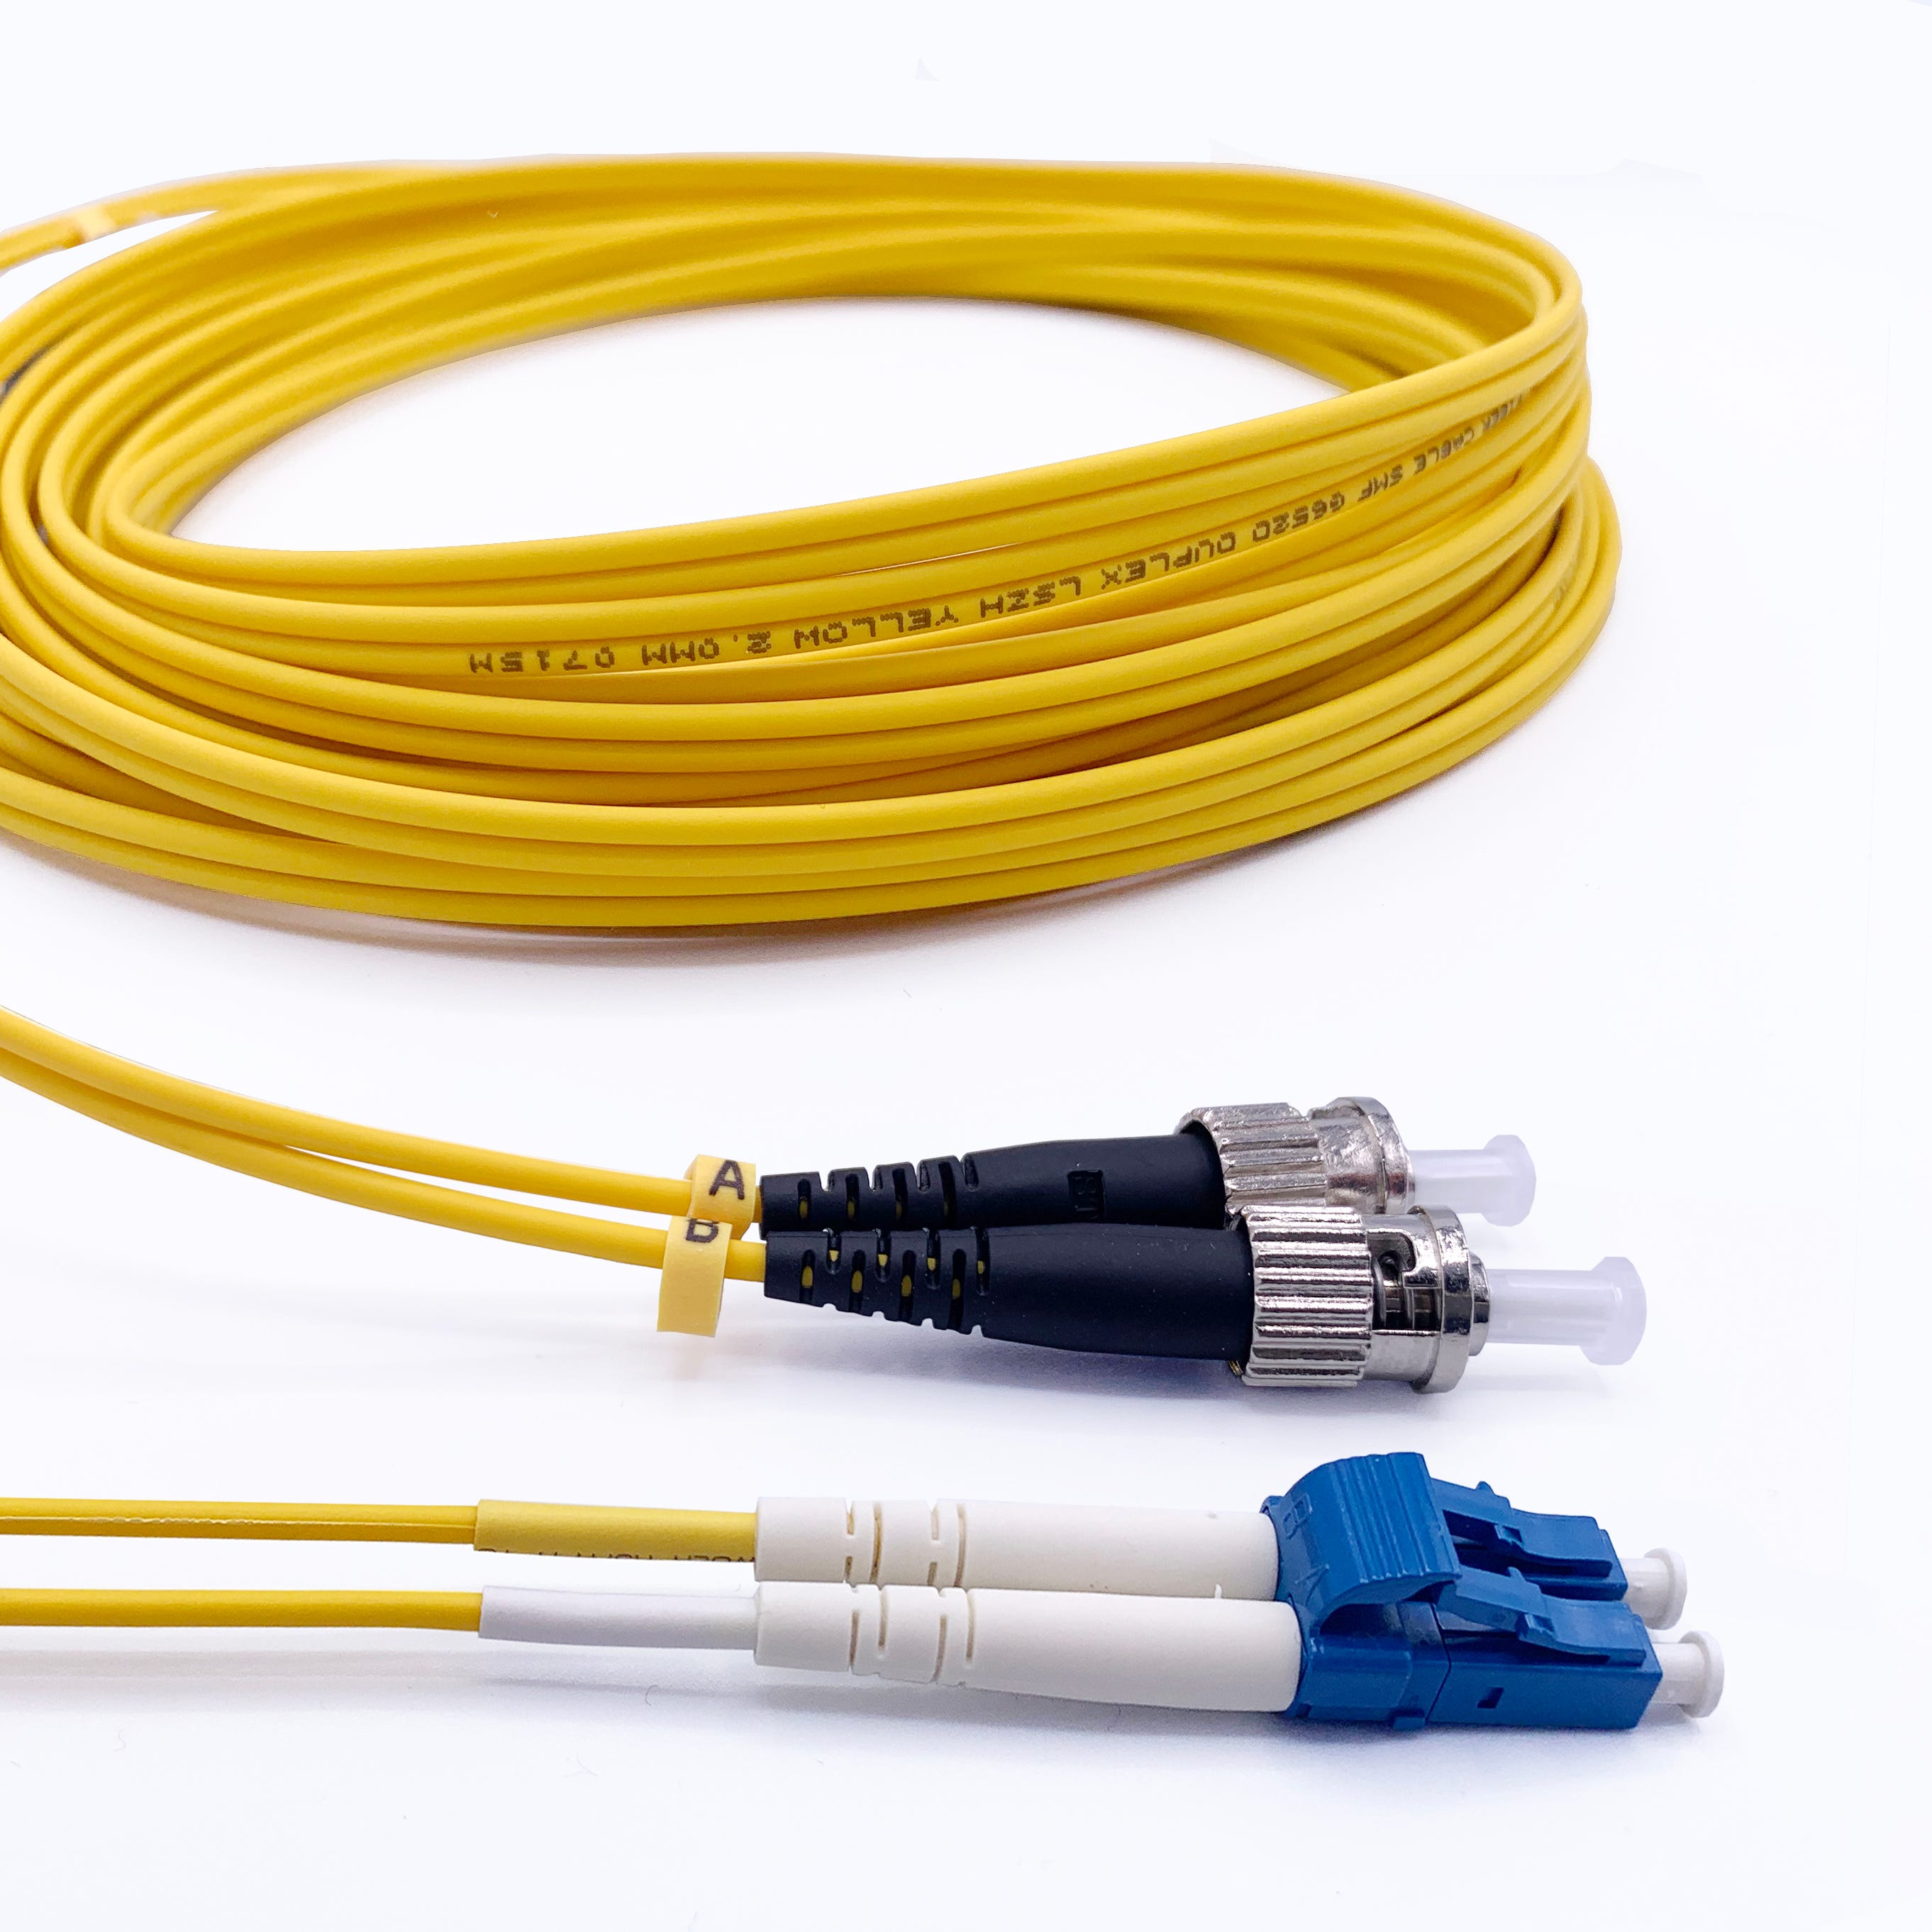 Elfcam - Cable a Fibre Optique pour Freebox, La Livraison avec Le Coupleur  pour Rallonge Fibre Optique Cable, SC/APC a SC/UPC Mono (25M)